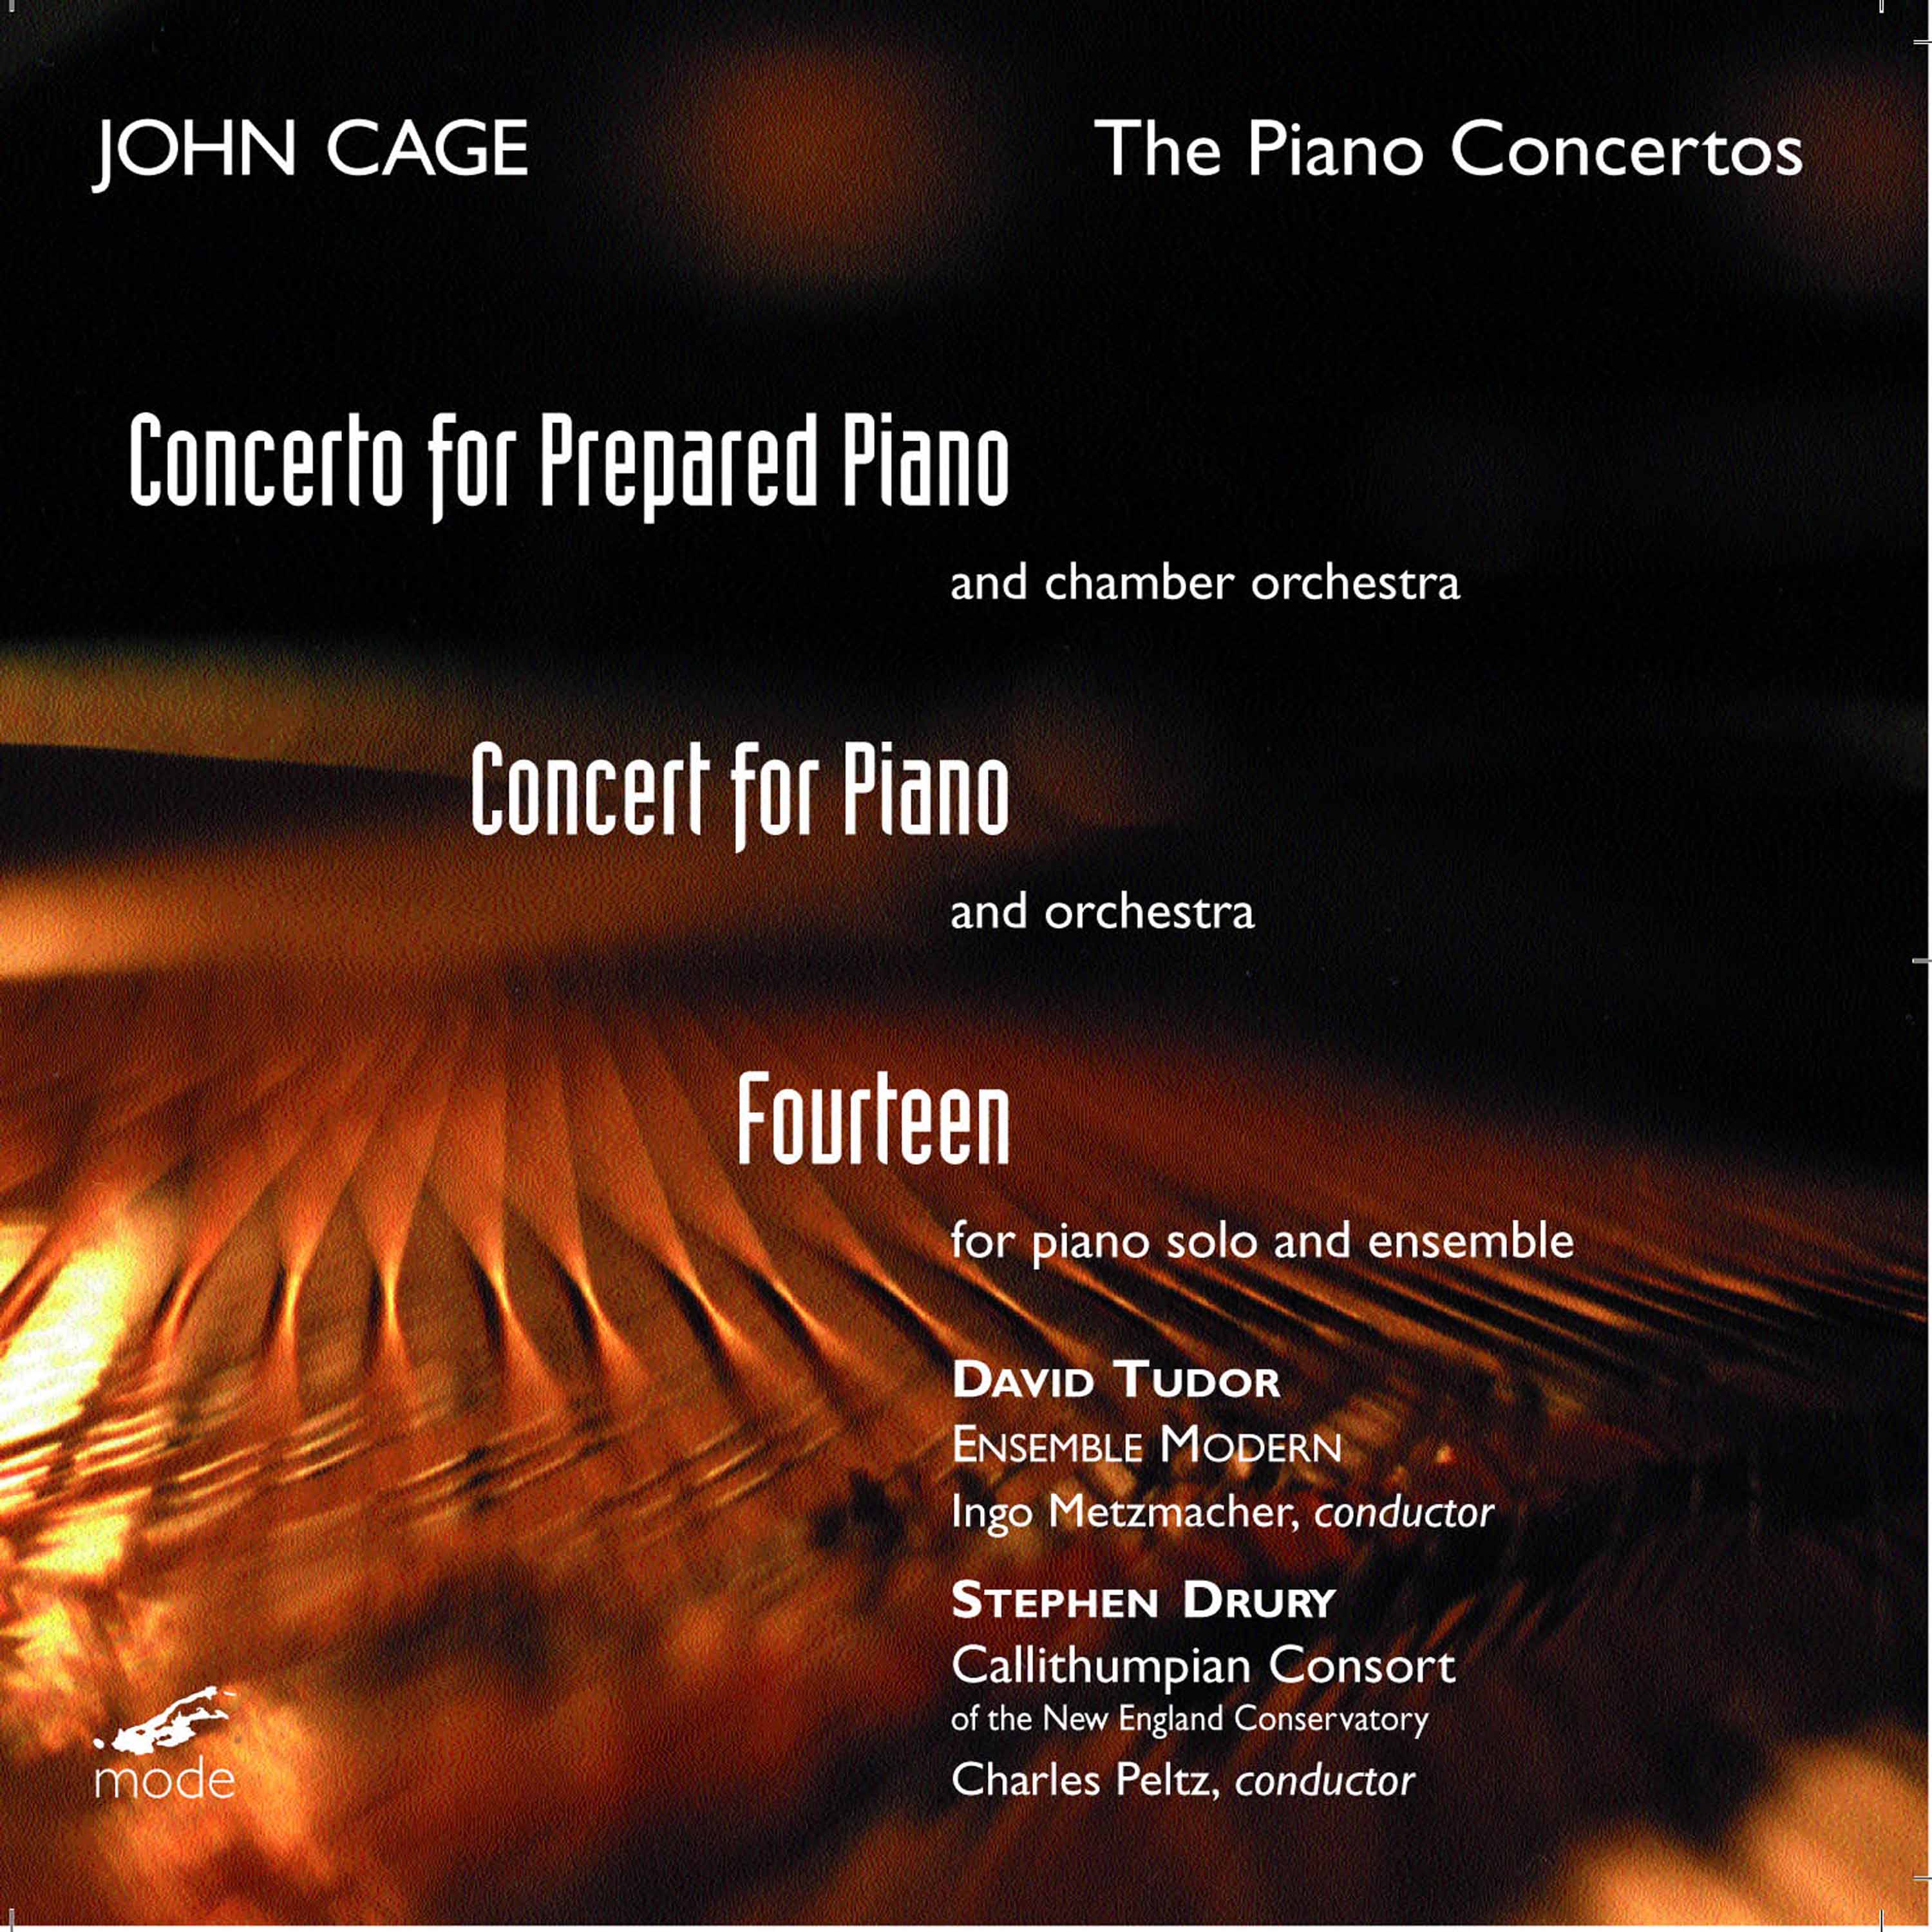 Concerto for Prepared Piano  Chamber Orchestra: I.